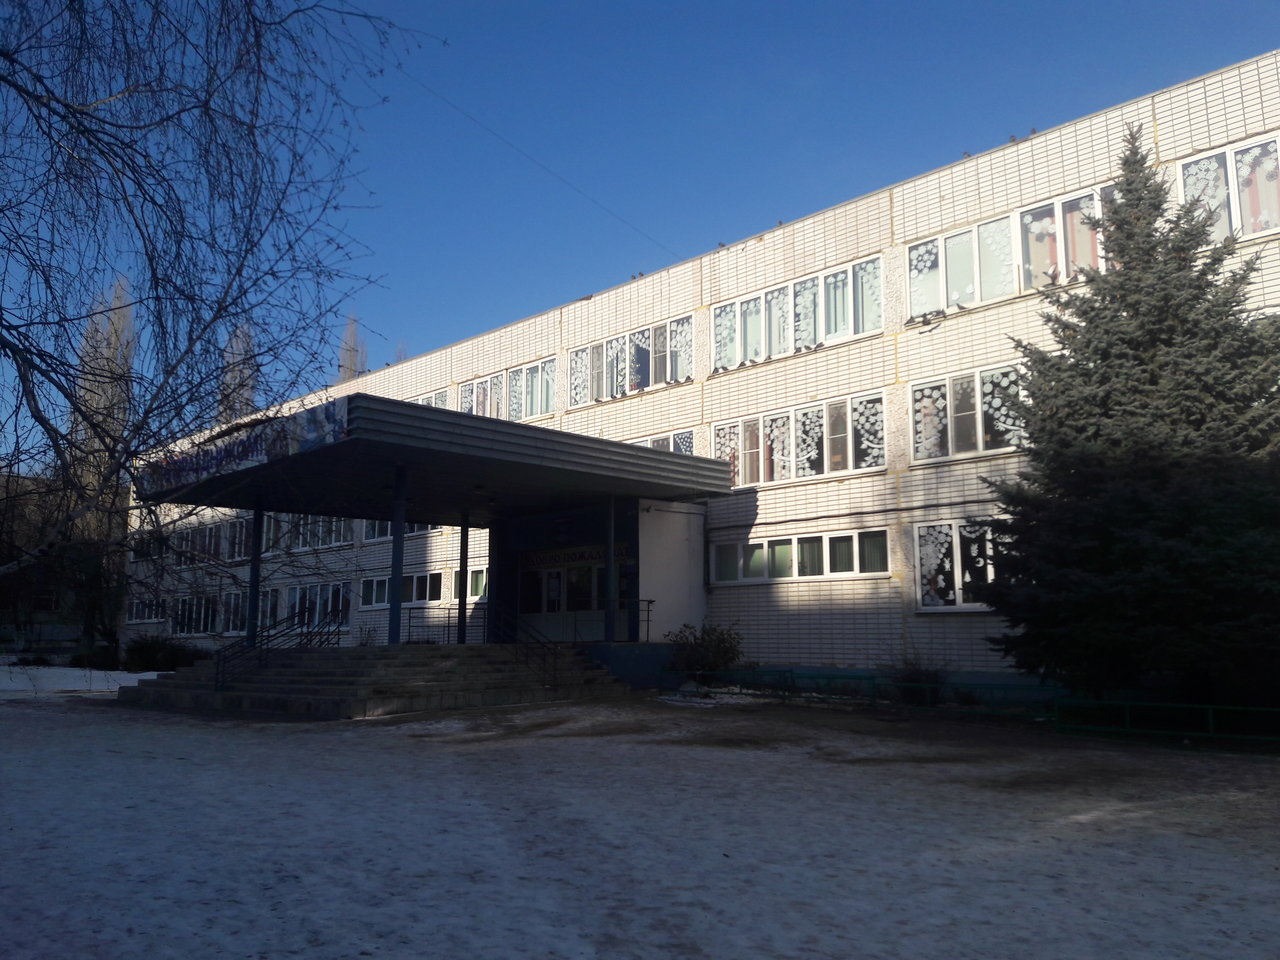 Фото основного здания школы сбоку